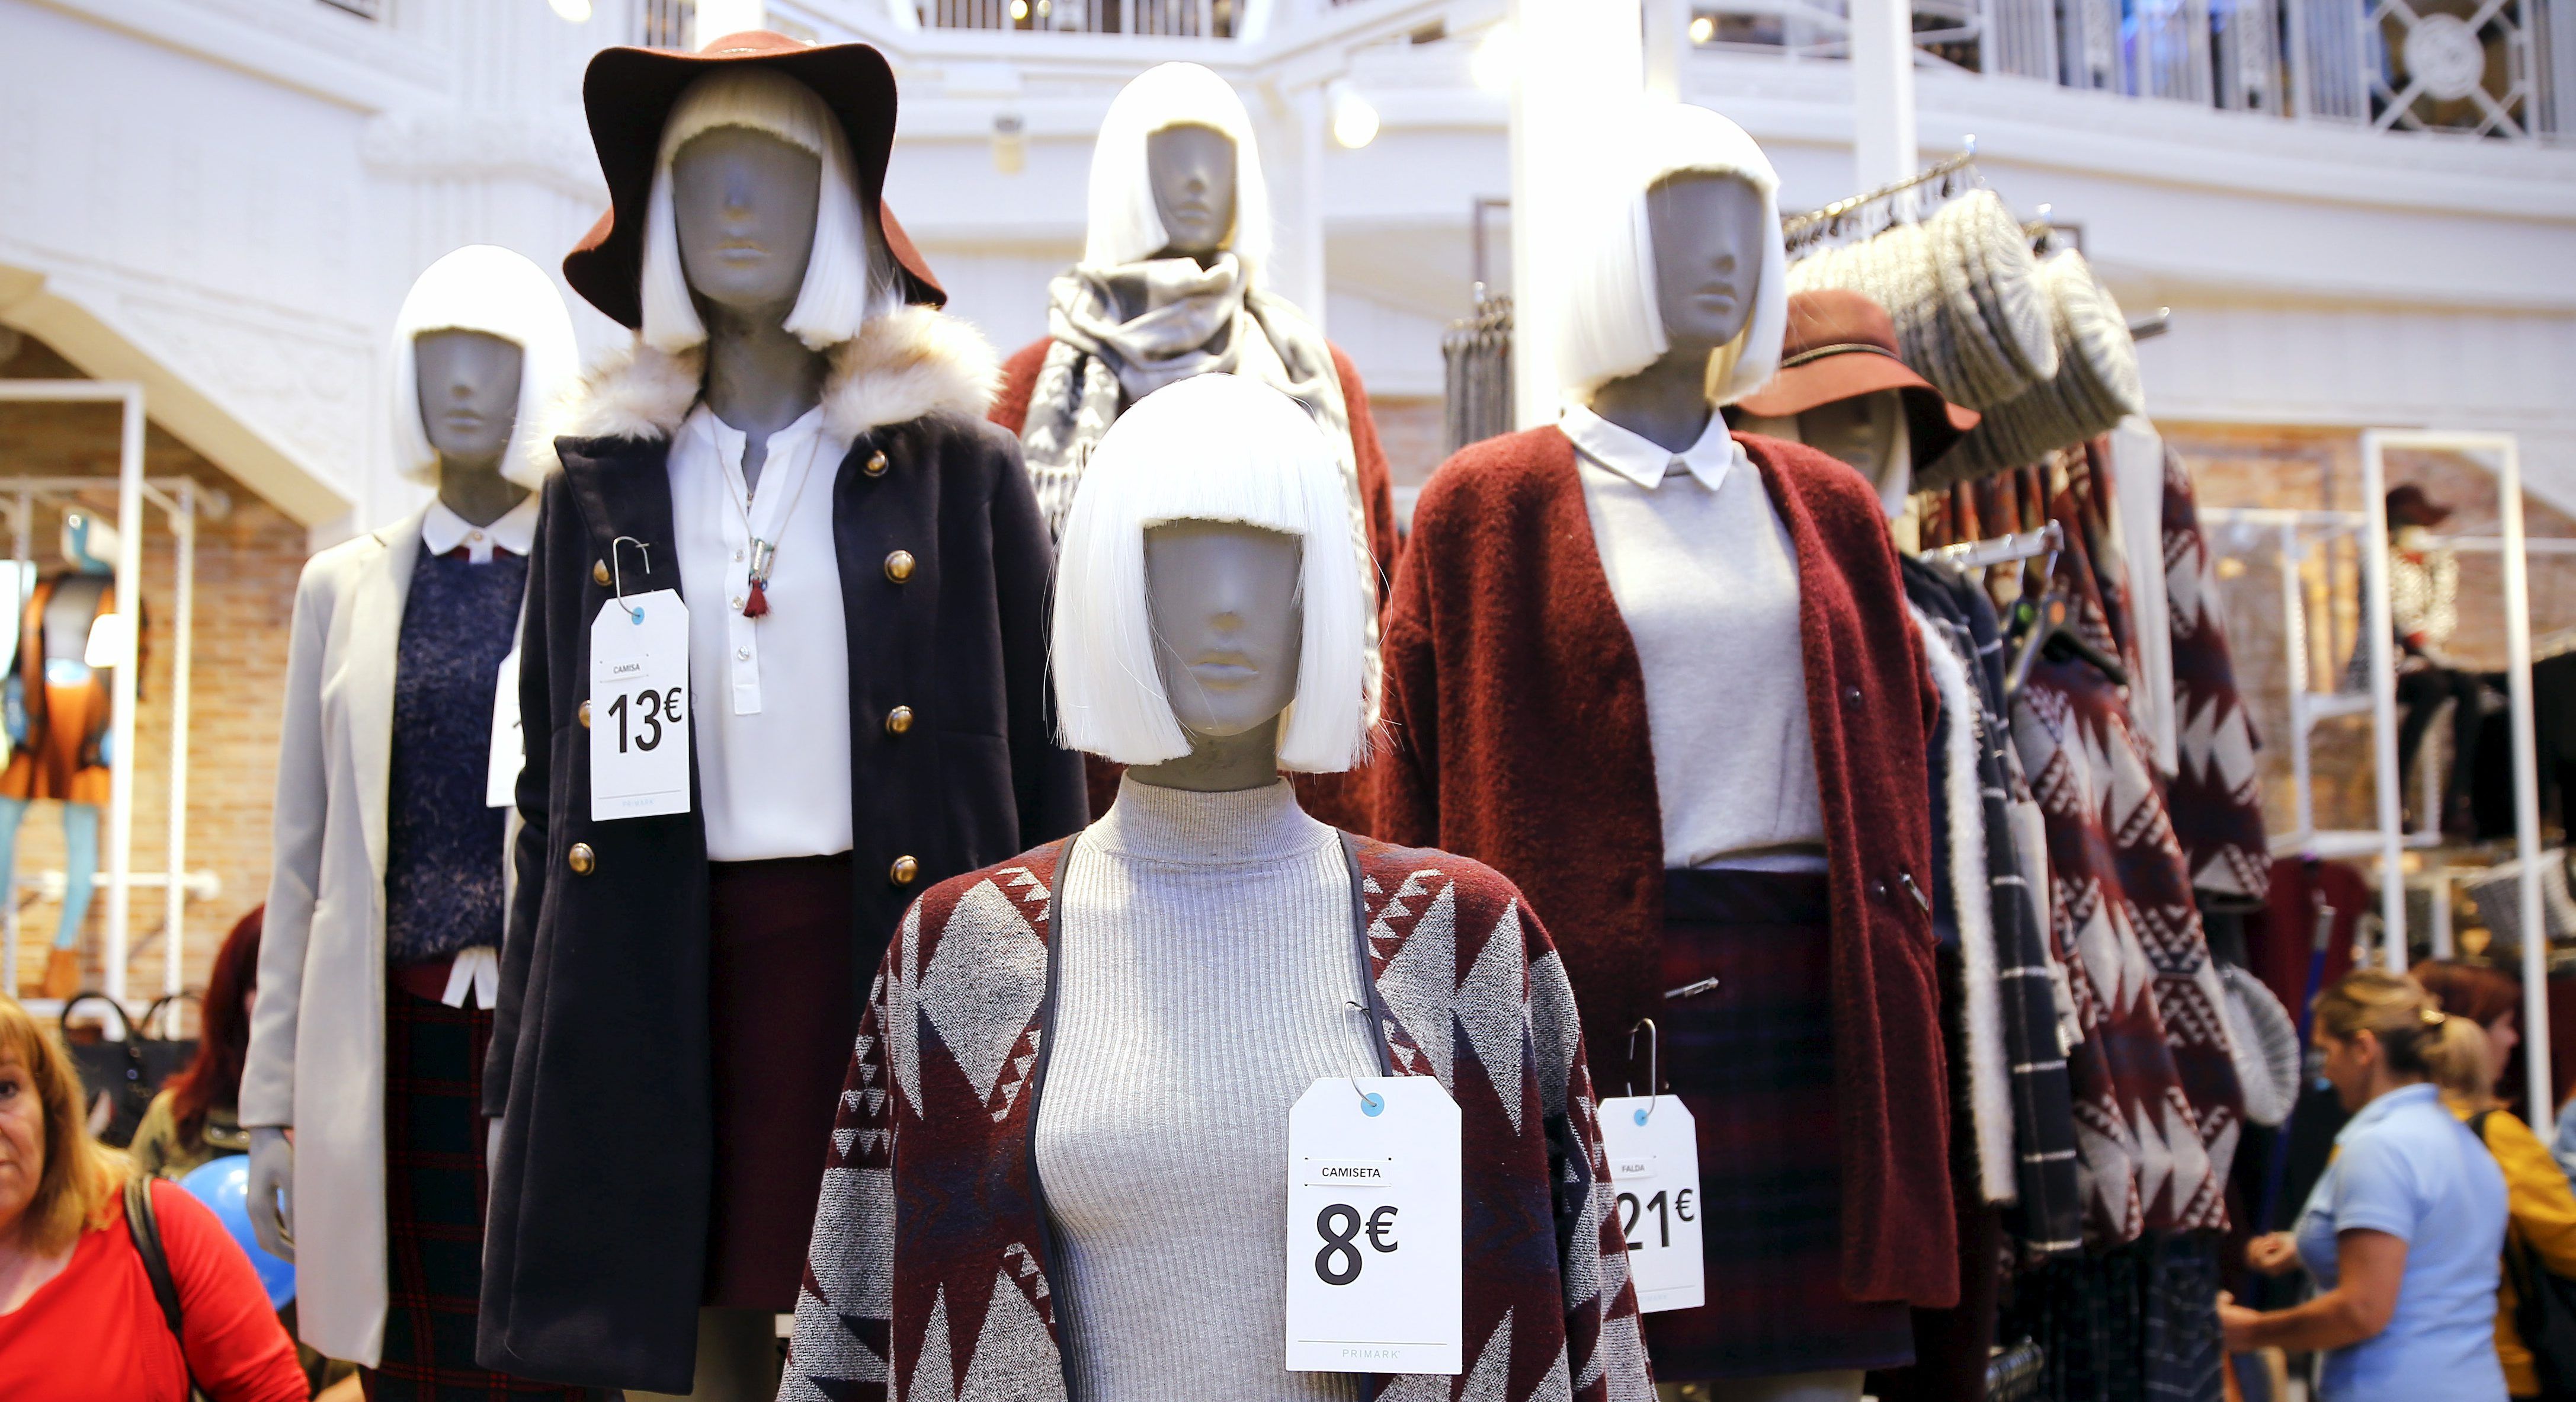 As fast fashions surgiram com uma proposta de colocar no mercado roupas para consumo rápido e com valores baixos. Mas, por trás disso, há diversos impactos sociais e ambientais.